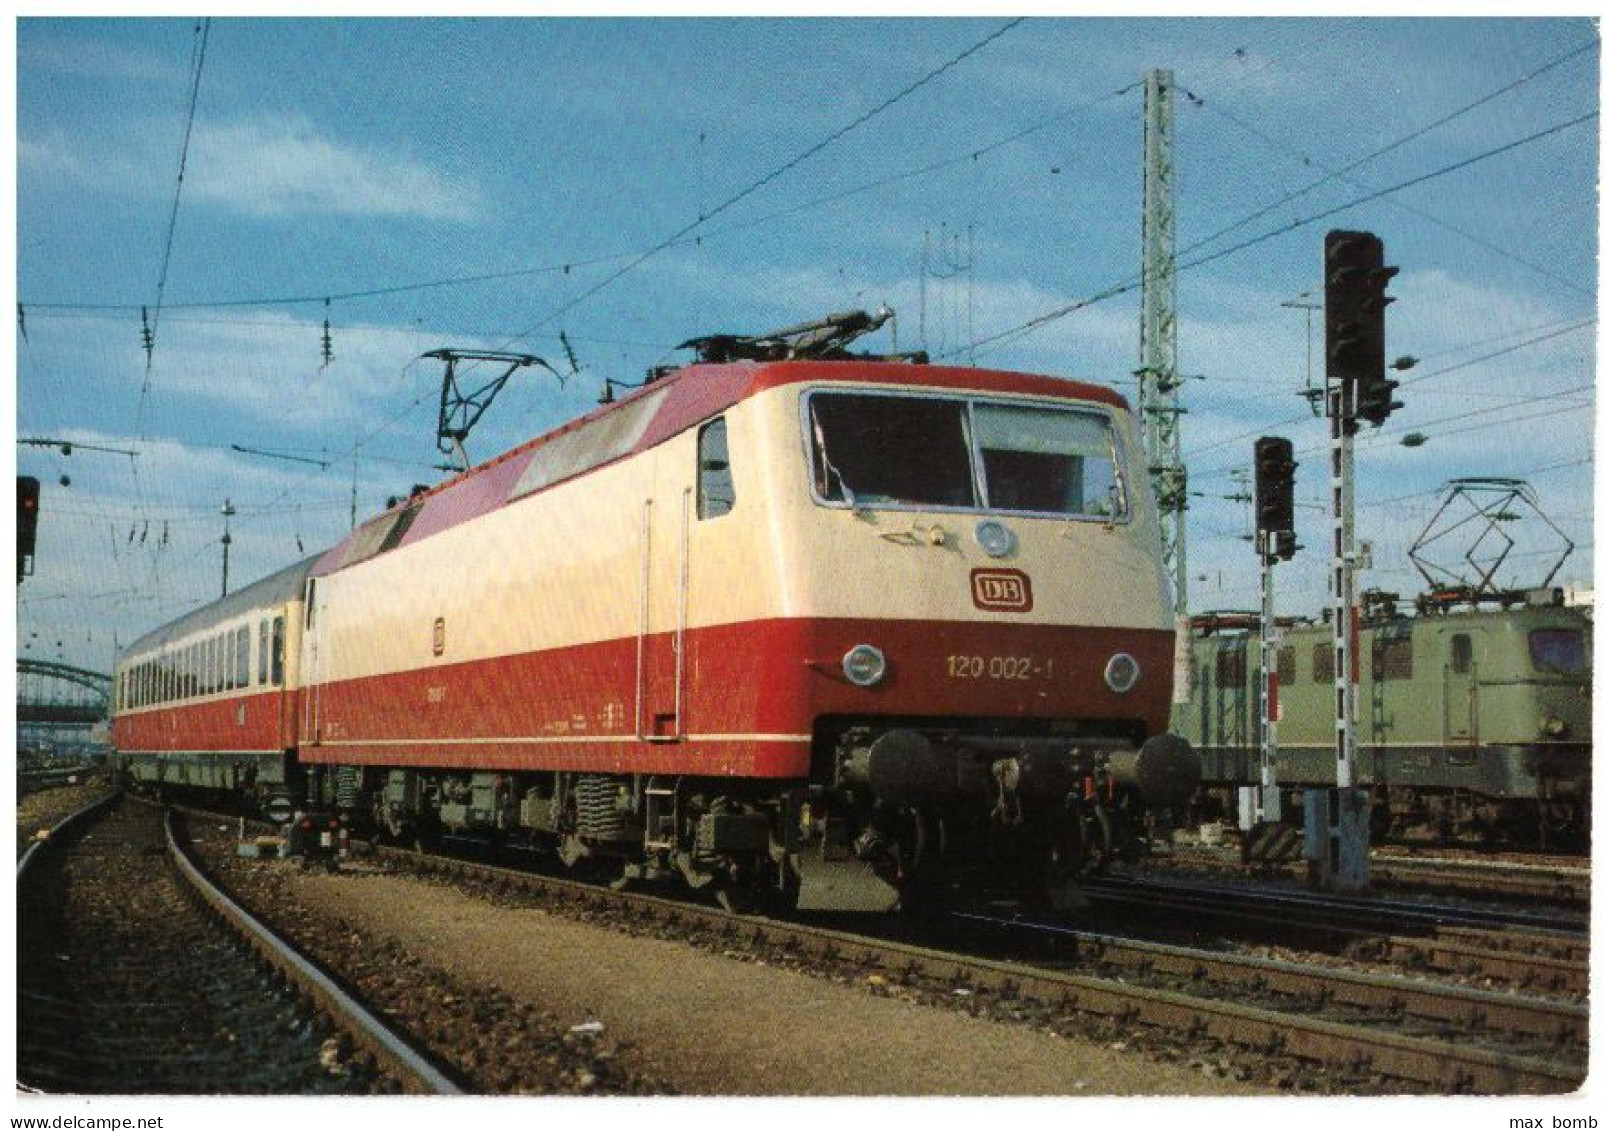 1981 TRENO GERMANIA DB ELEKTRISCHE UNIVERSALLOKOMOTIVE 120 002.1 LOCOMOTORE 106 - Eisenbahnen